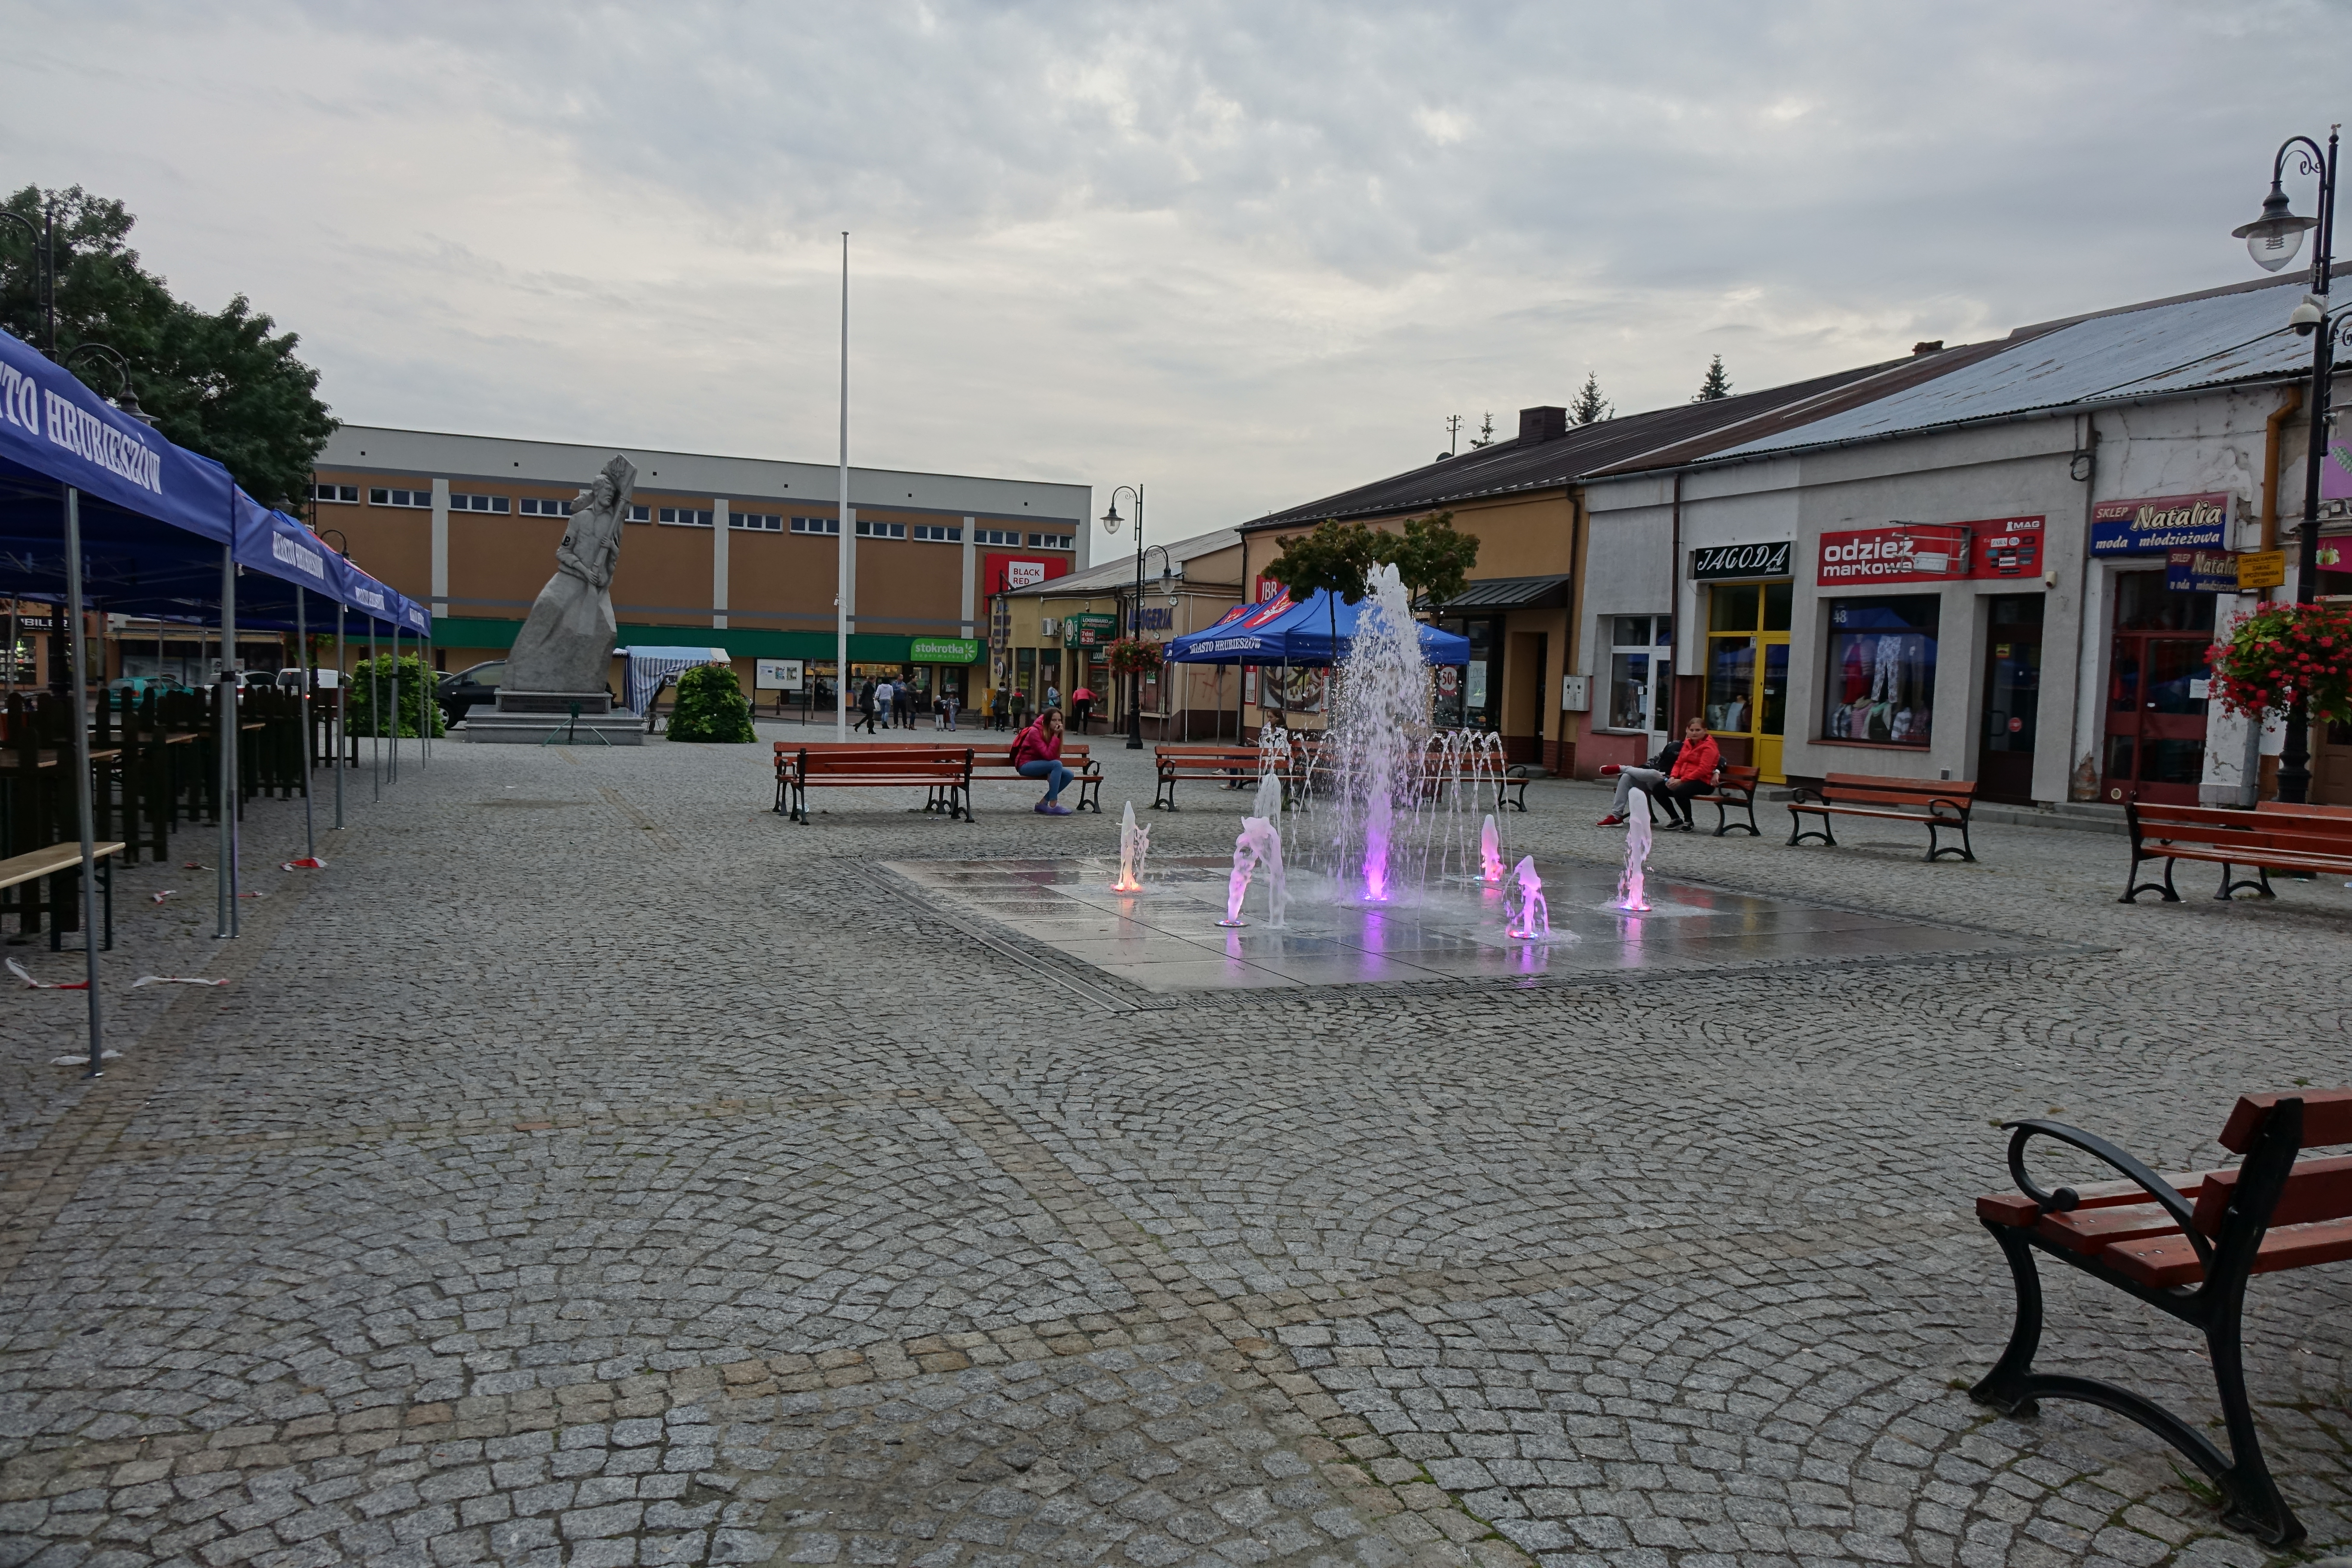 Rynek w Hrubieszowie (fot. Luxetowiec/ CC BY-SA 4.0/ Wikipedia)